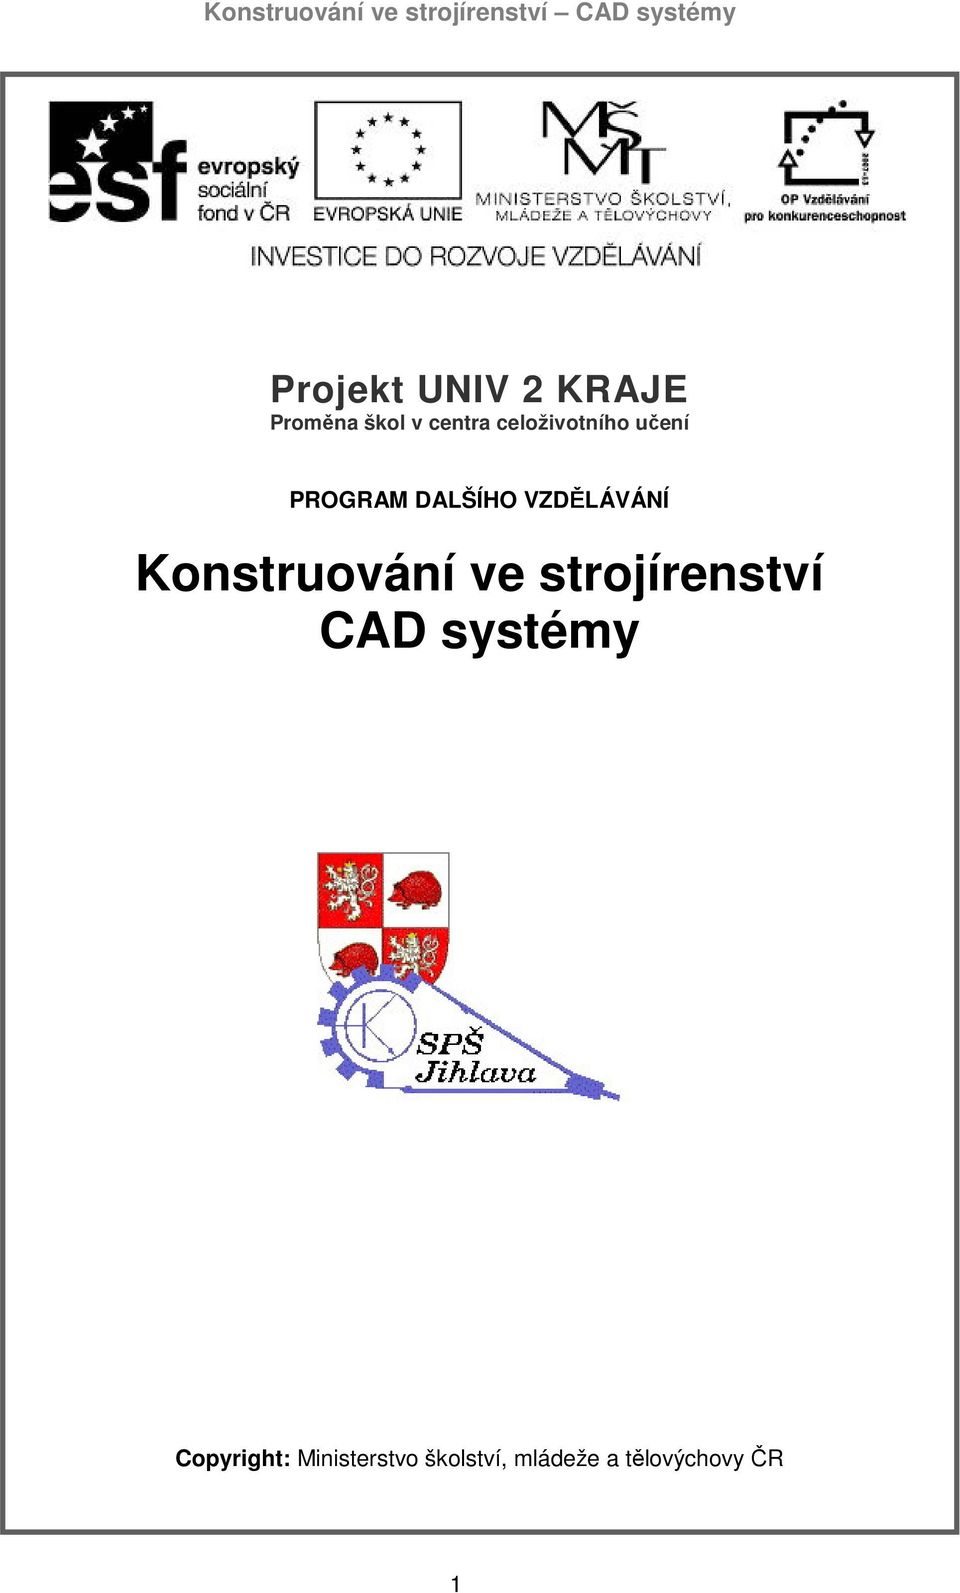 Konstruování ve strojírenství CAD systémy